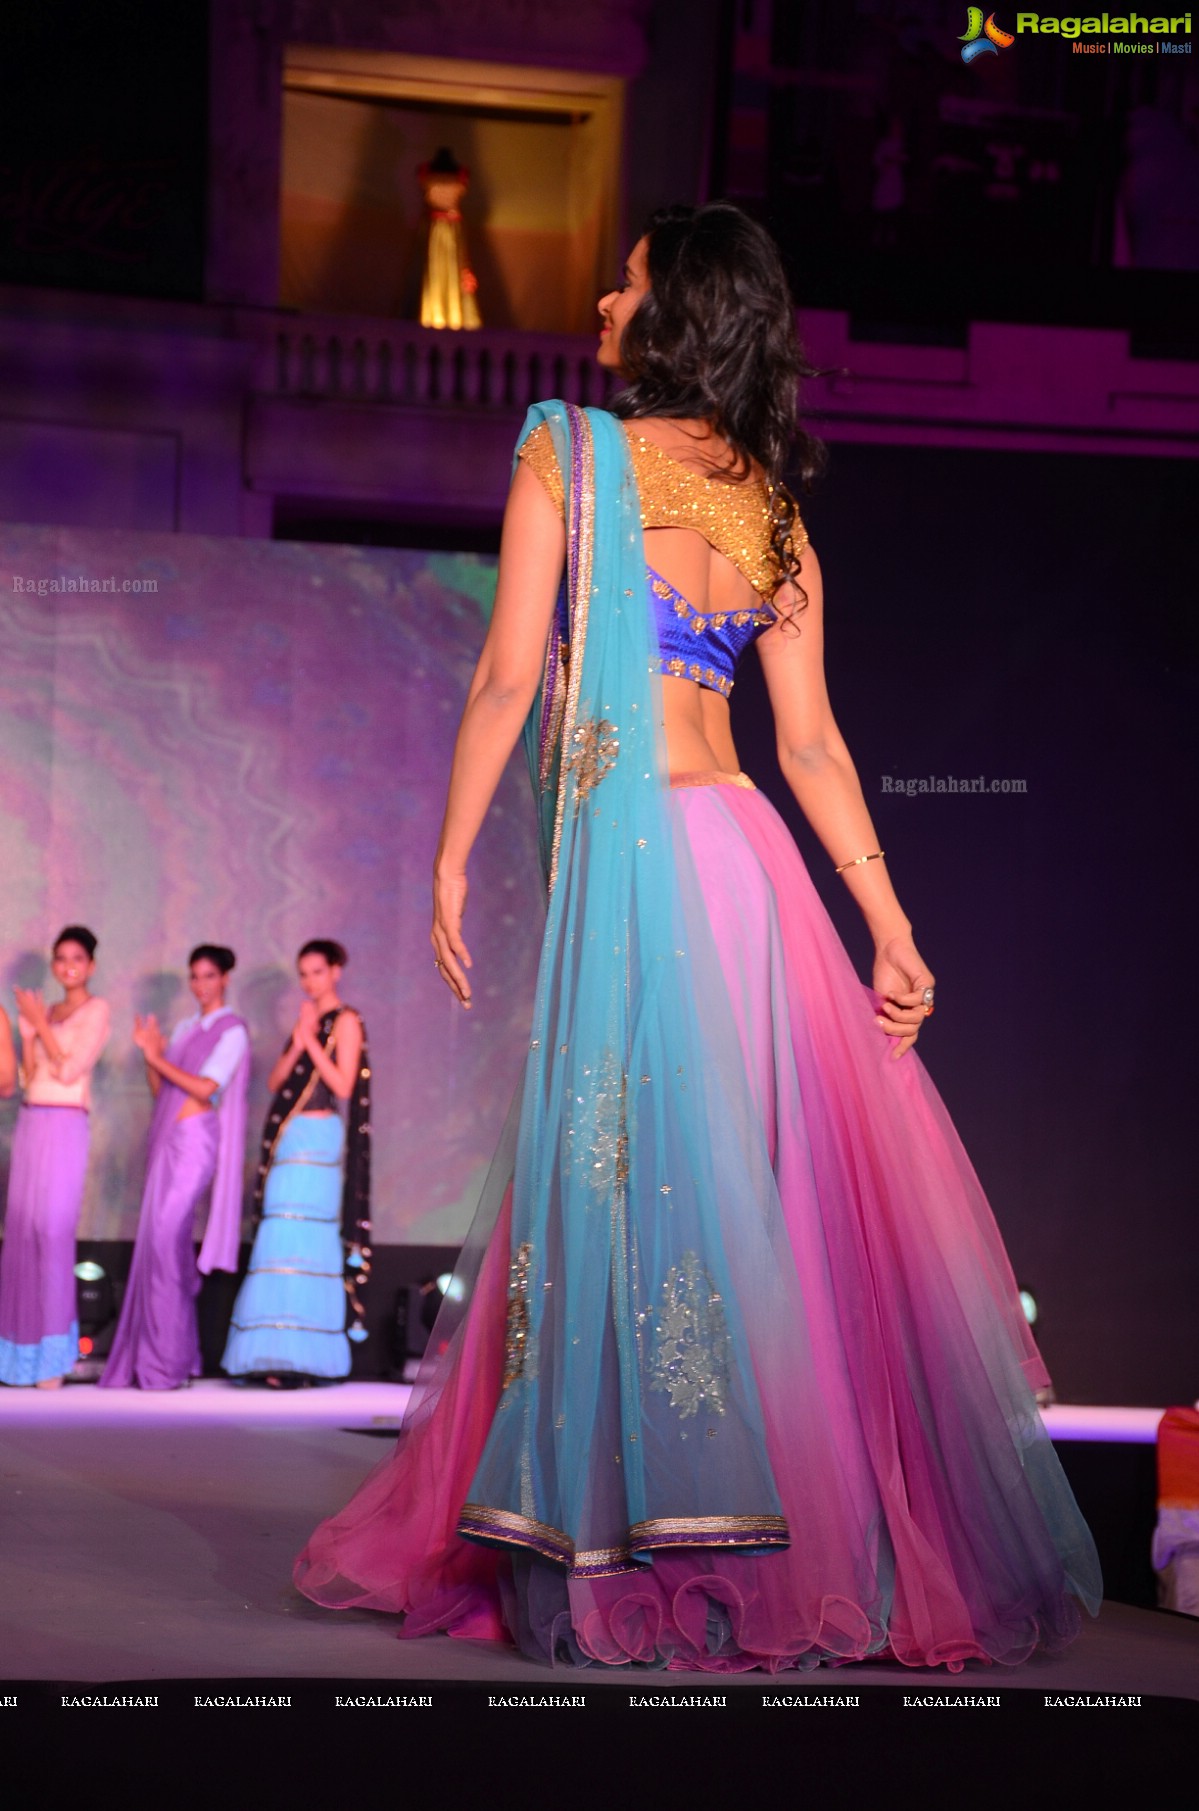 Legacy of Prestige - A Fashion Show by Architha Narayanam